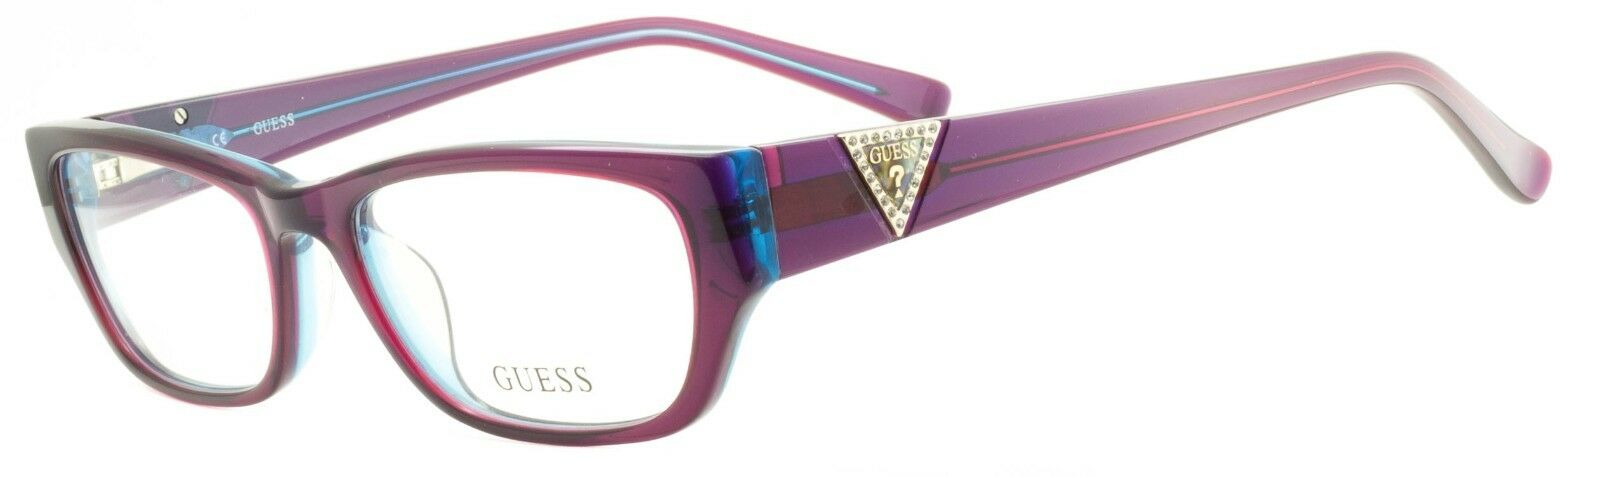 GUESS GU 2387 PURBL Eyewear FRAMES Glasses Eyeglasses RX Optical BNIB - TRUSTED